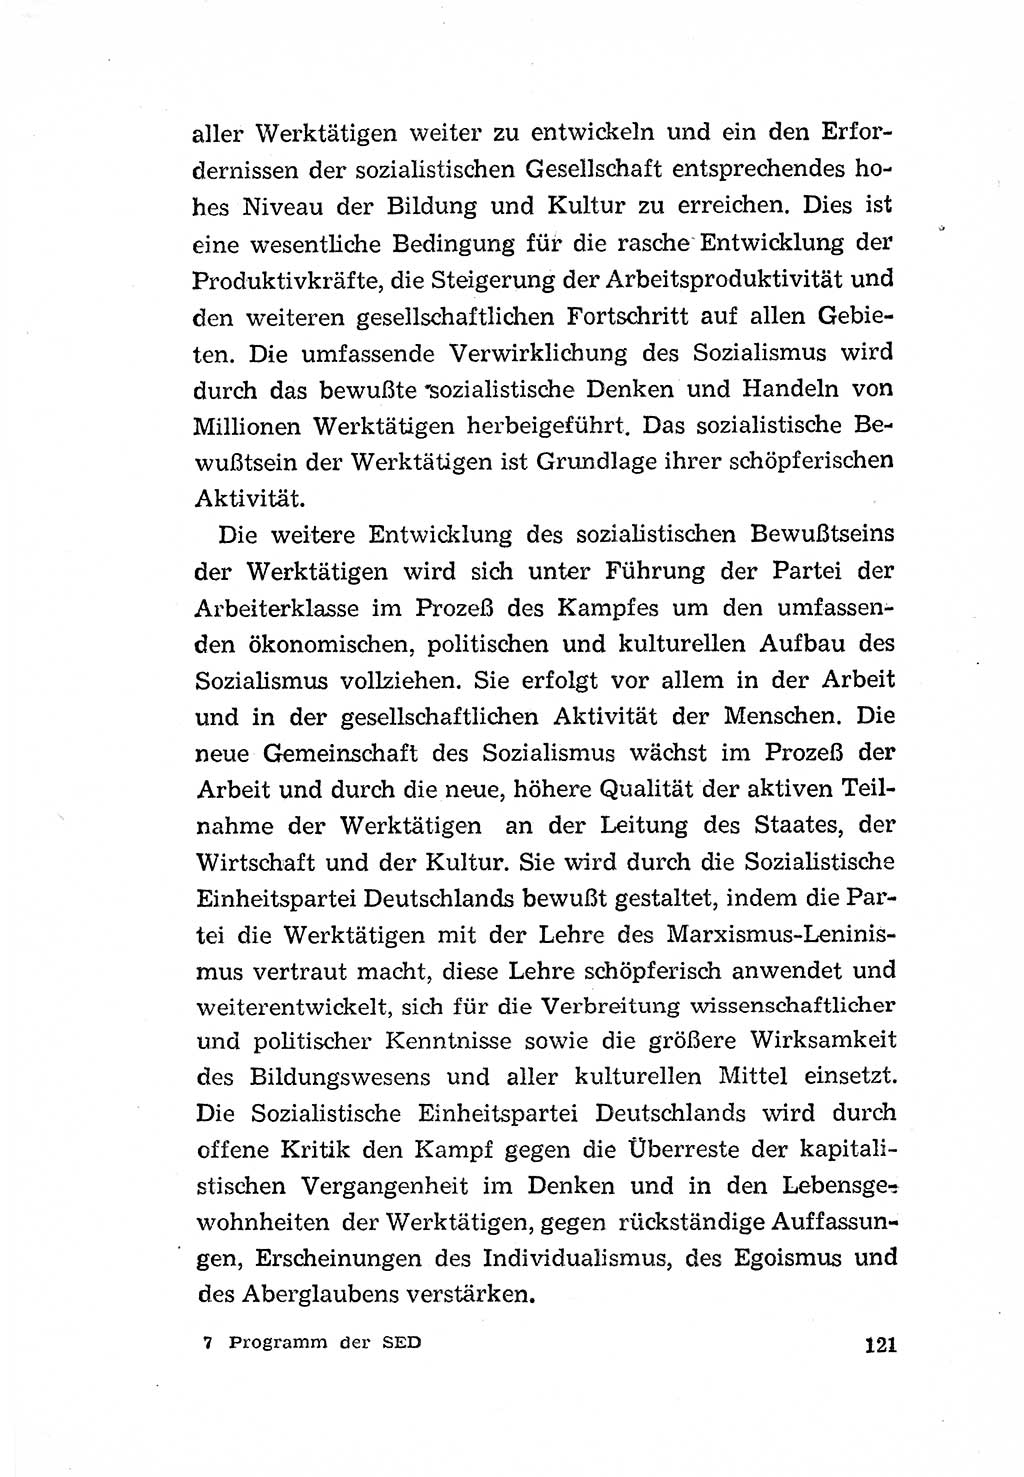 Programm der Sozialistischen Einheitspartei Deutschlands (SED) [Deutsche Demokratische Republik (DDR)] 1963, Seite 121 (Progr. SED DDR 1963, S. 121)